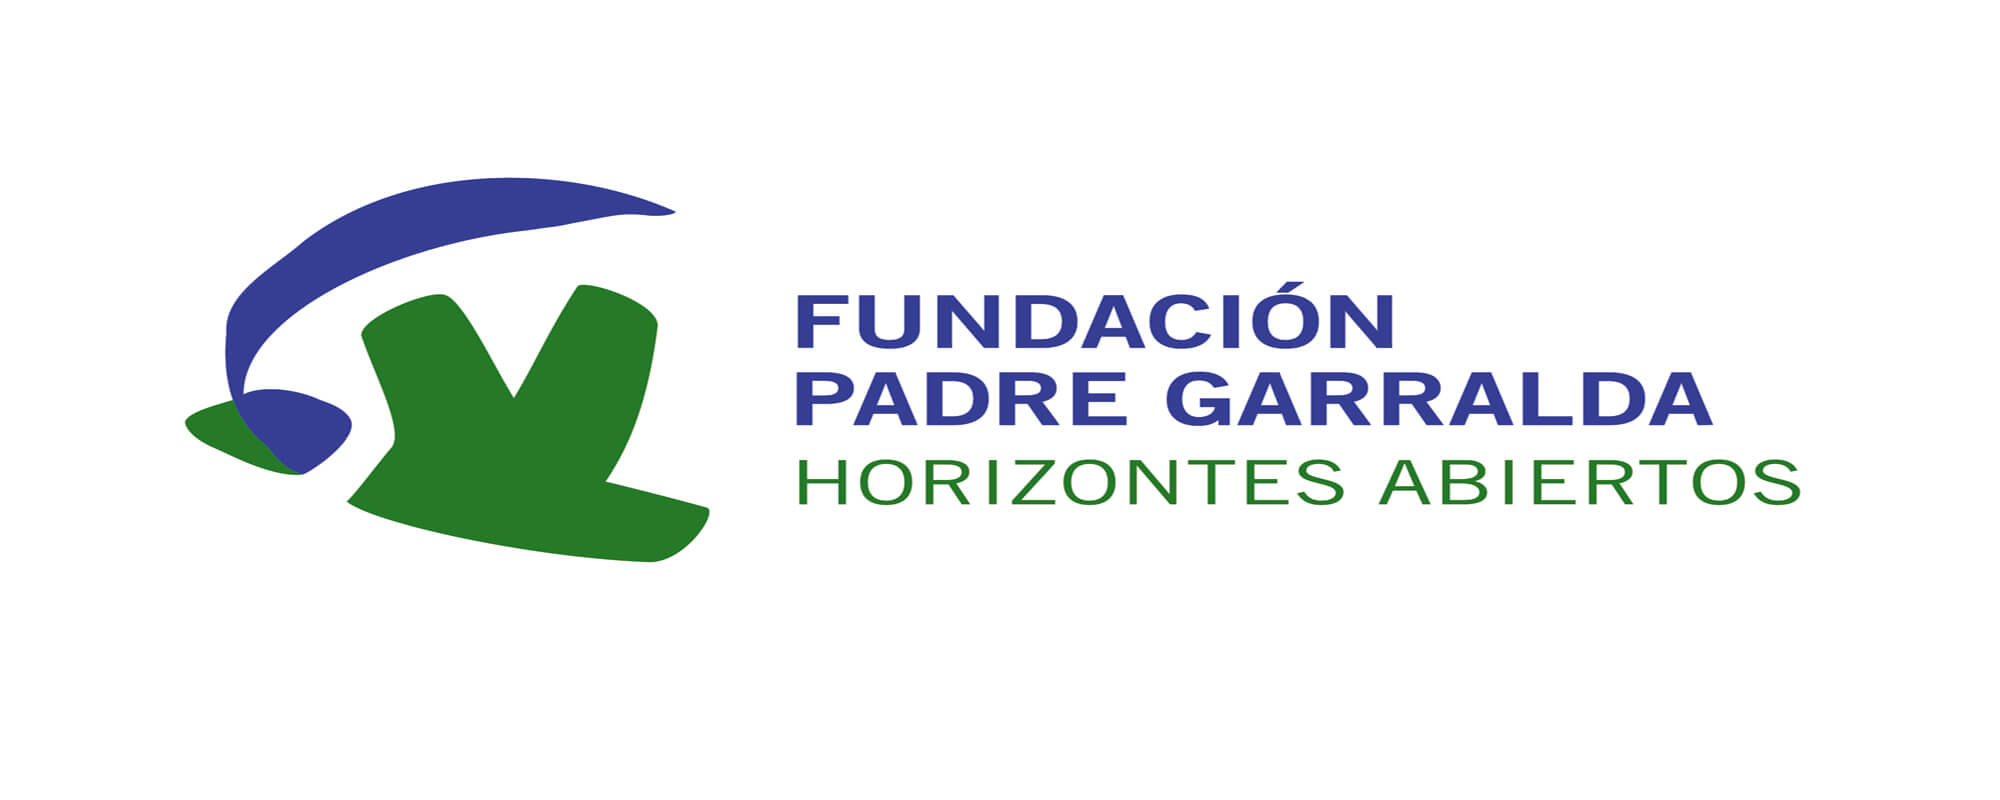 Fundación Padre Garralda Horizontes Abiertos